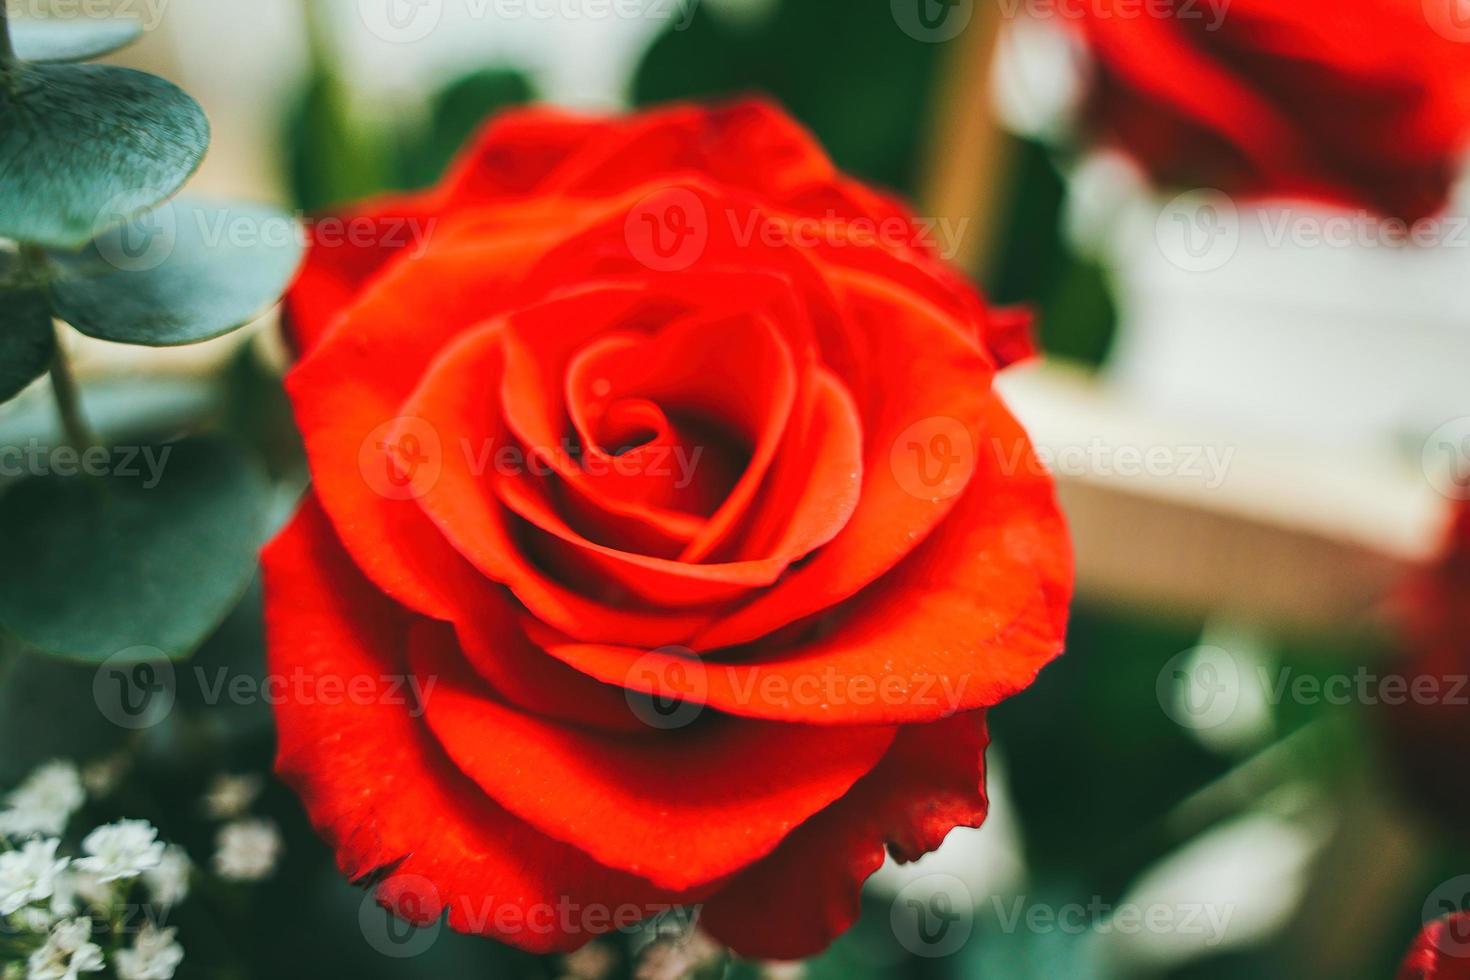 buquê de rosas vermelhas frescas, fundo brilhante de flores. close-up de uma rosa vermelha com gotas de água. foto